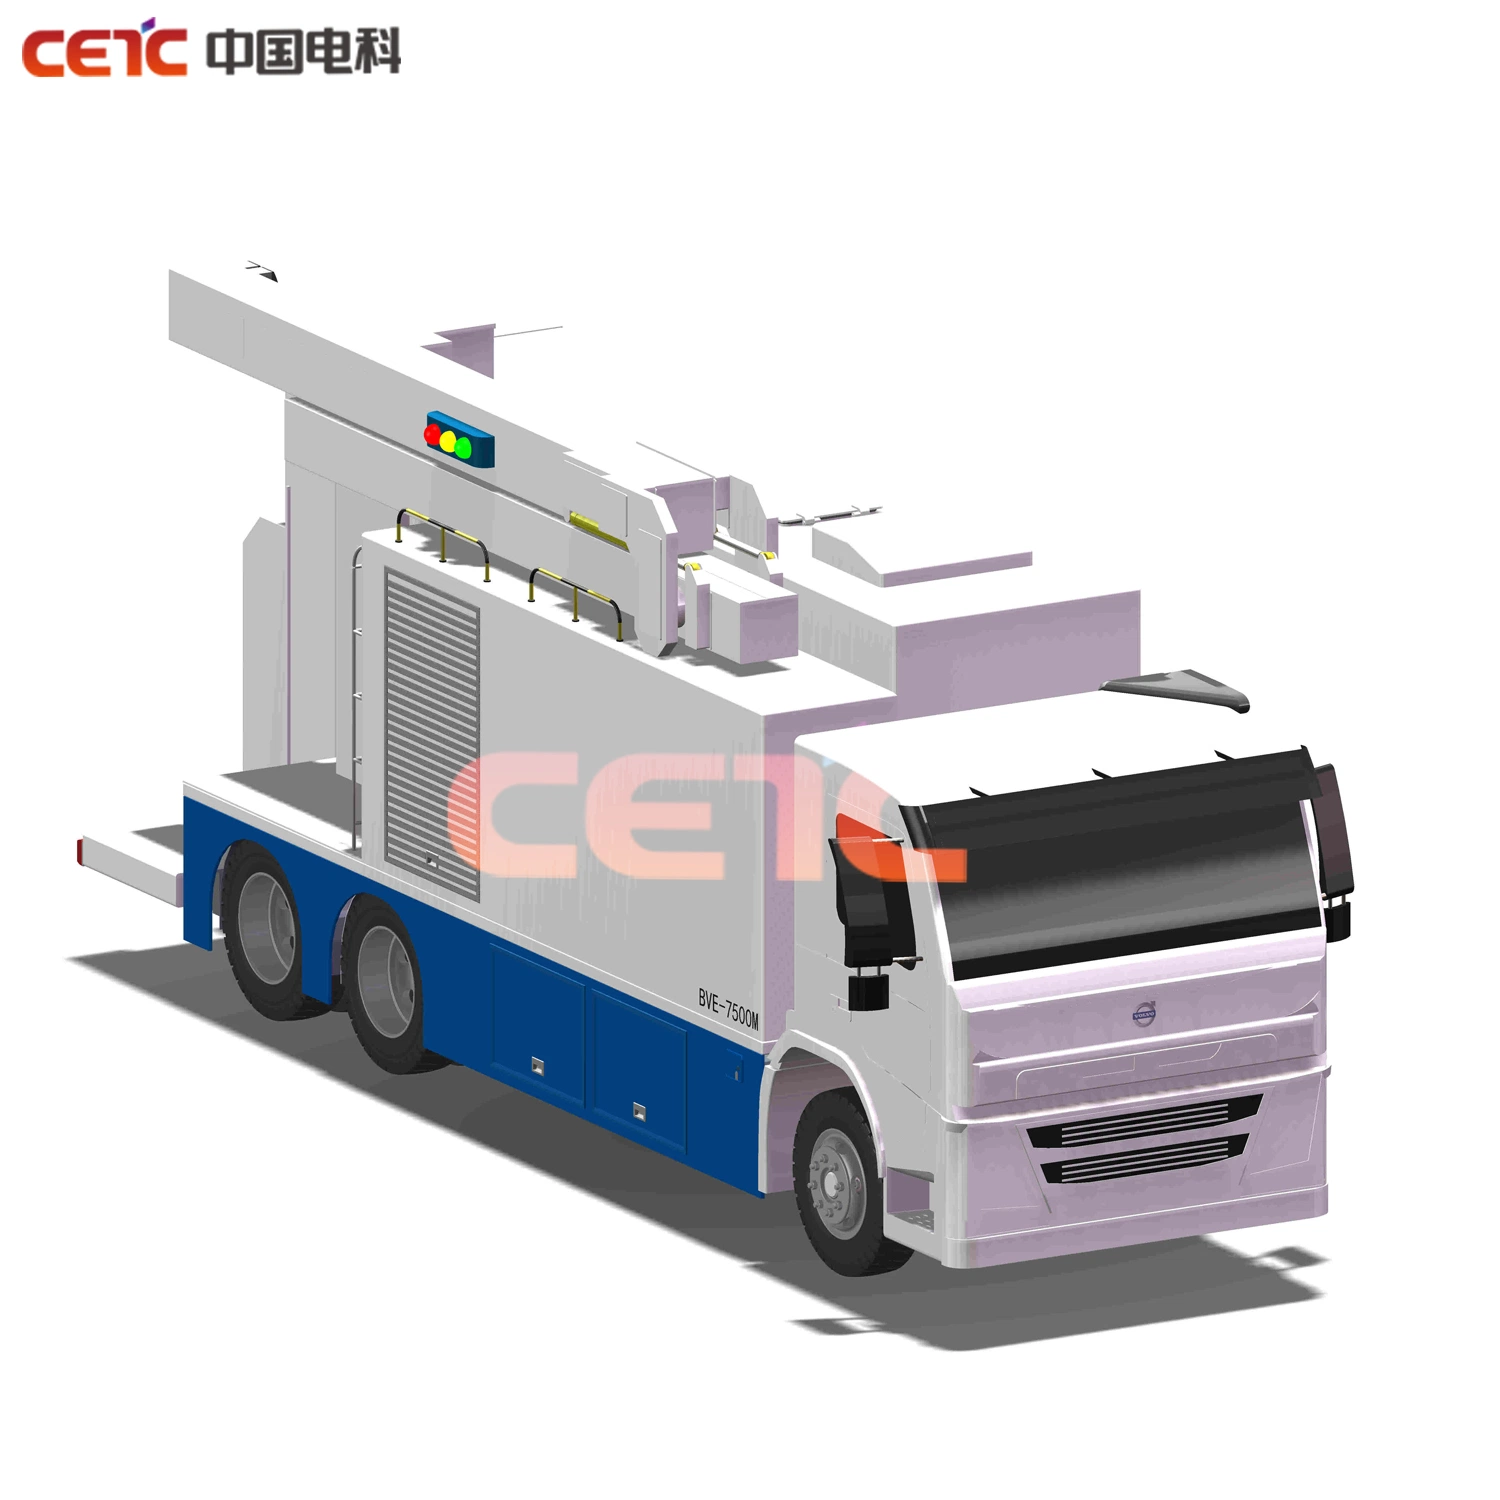 Röntgengerät Container Cargo und Fahrzeug Röntgeninspektionssystem - Mobil